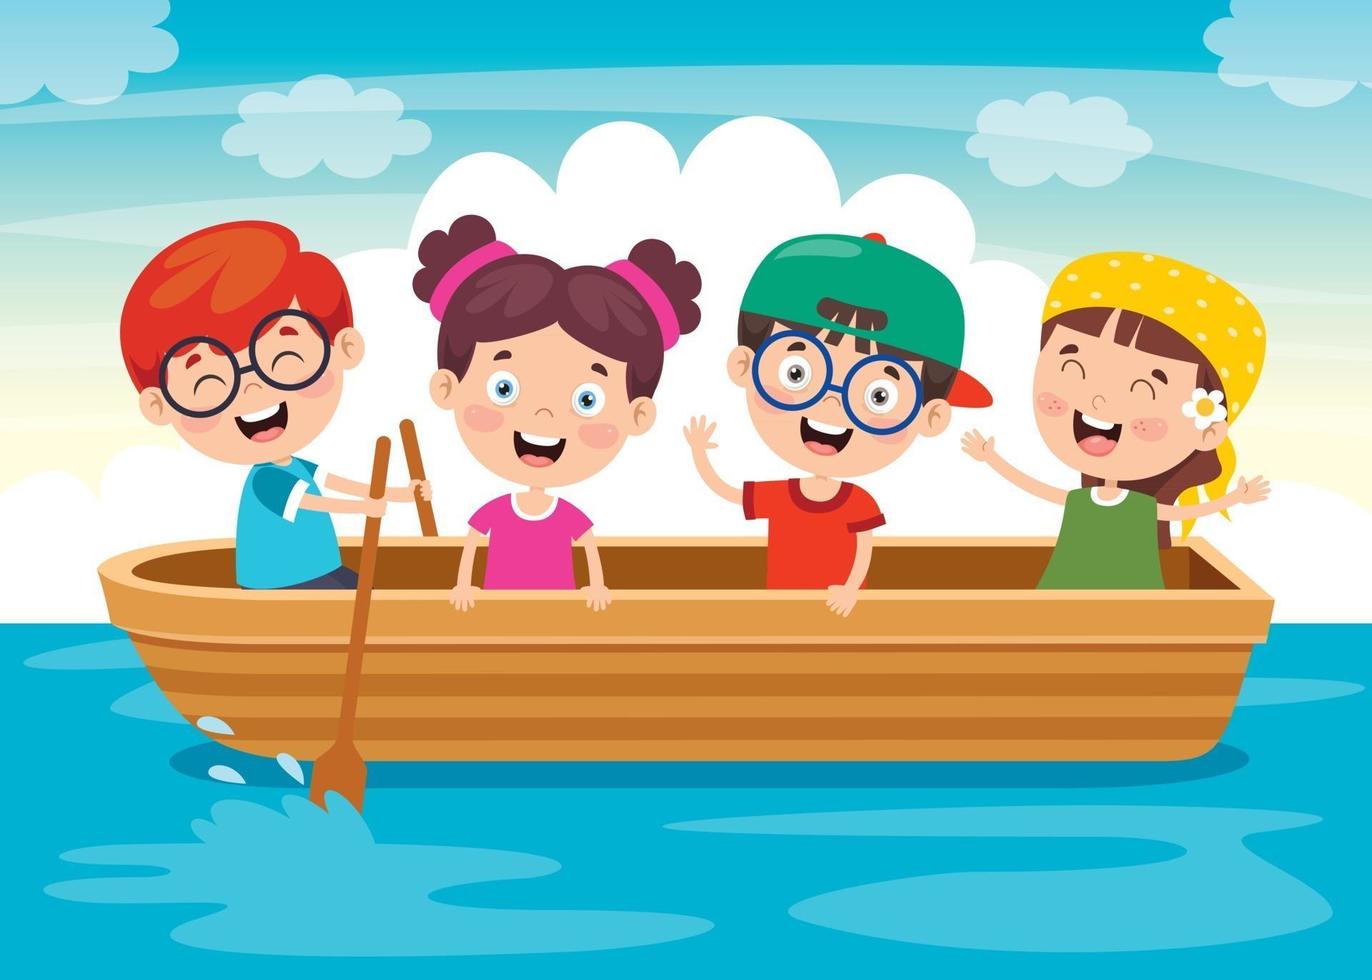 crianças fofas no barco vetor